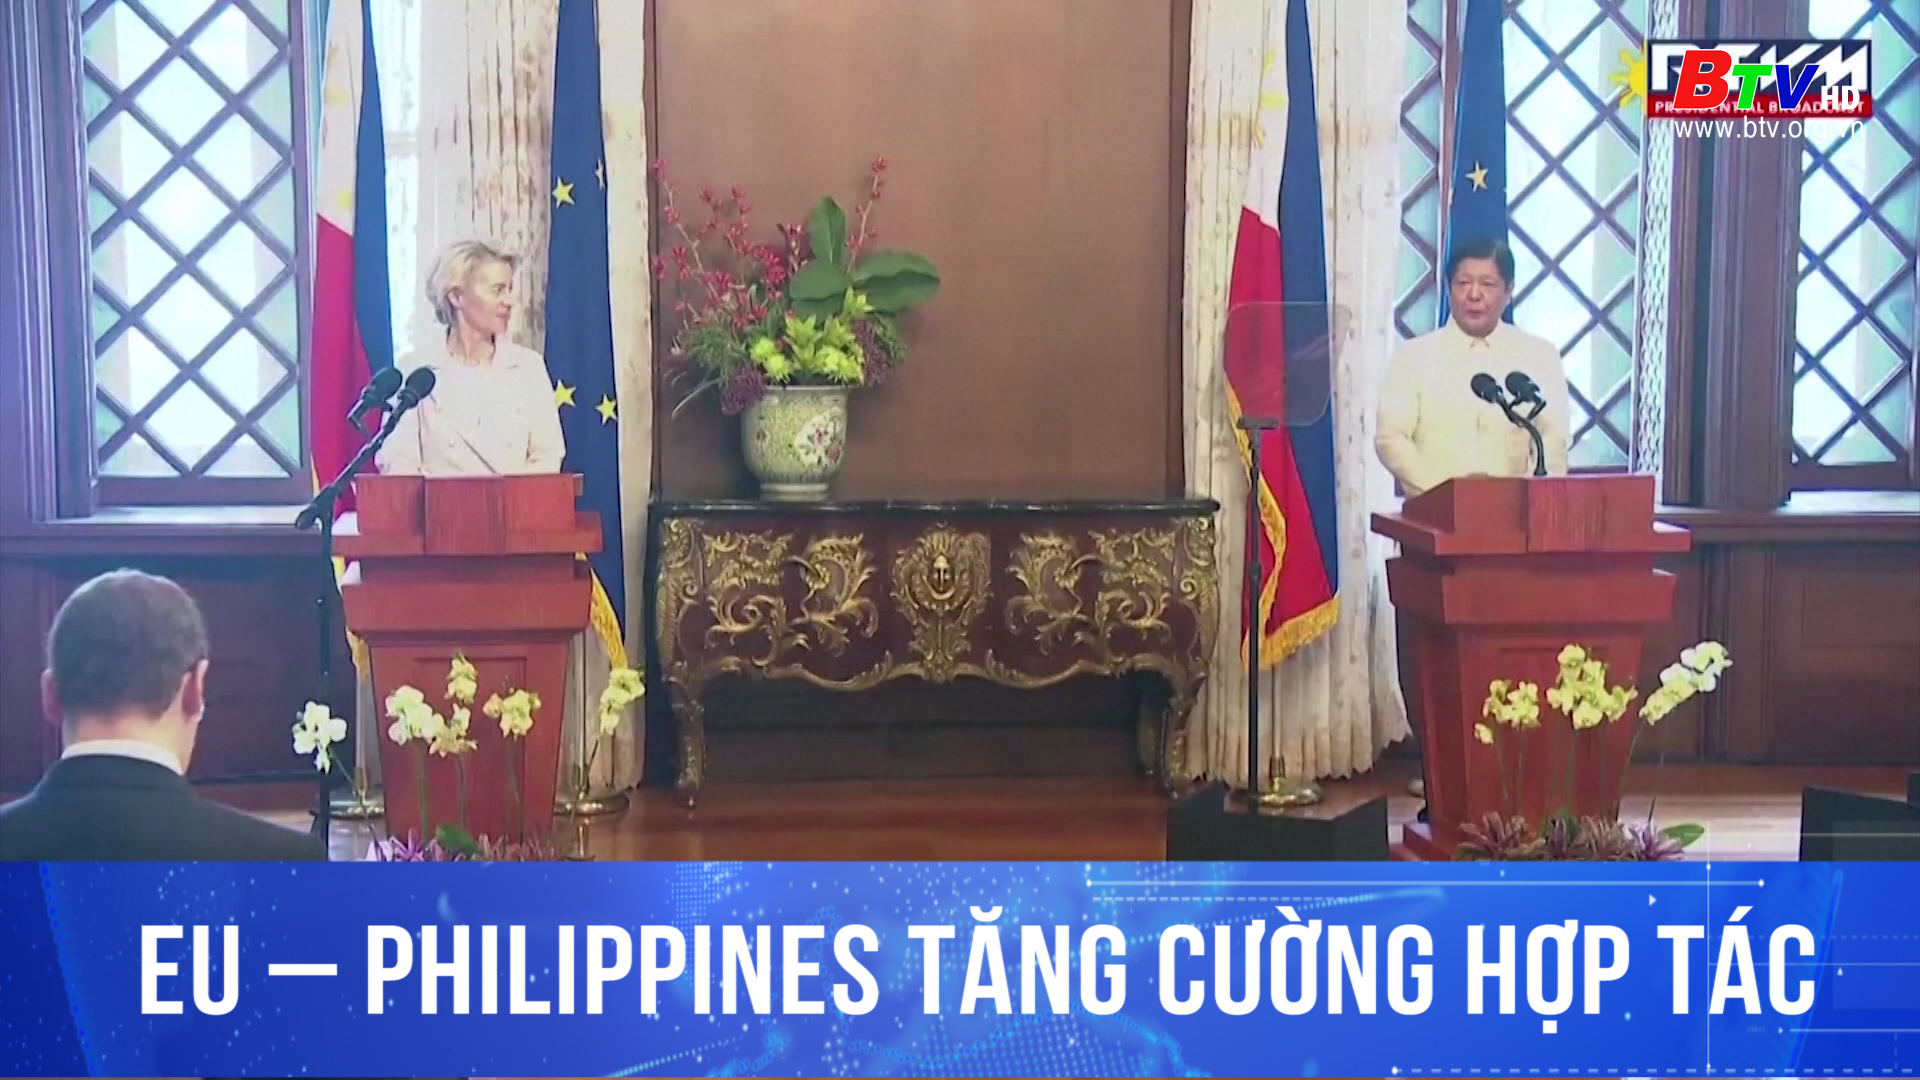 EU - Philippines tăng cường hợp tác